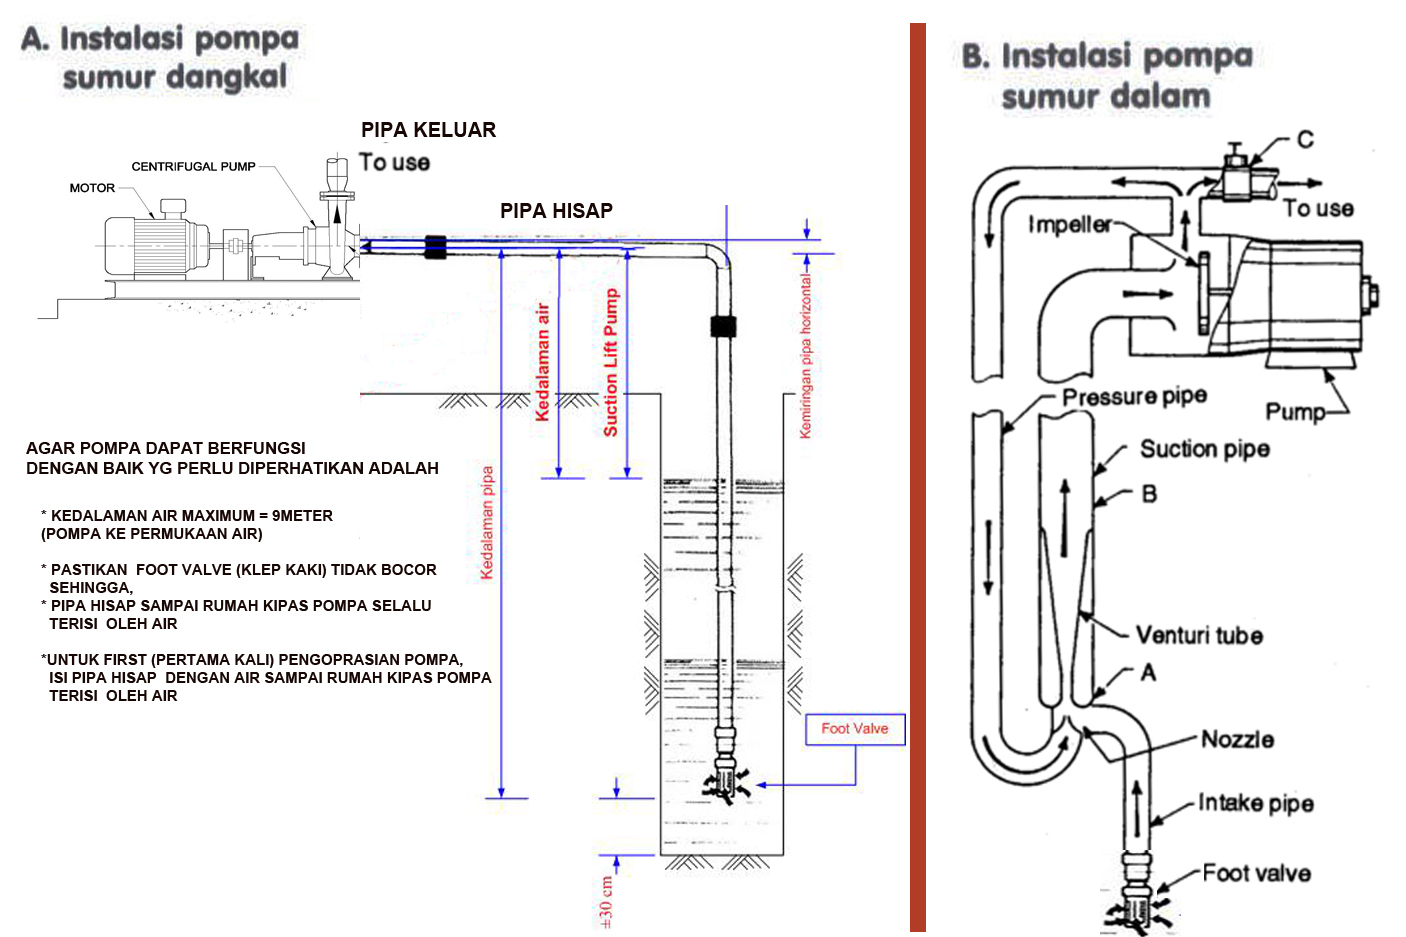 Cara Kerja Pompa Submersible Prinsip kerja mesin pompa submersible